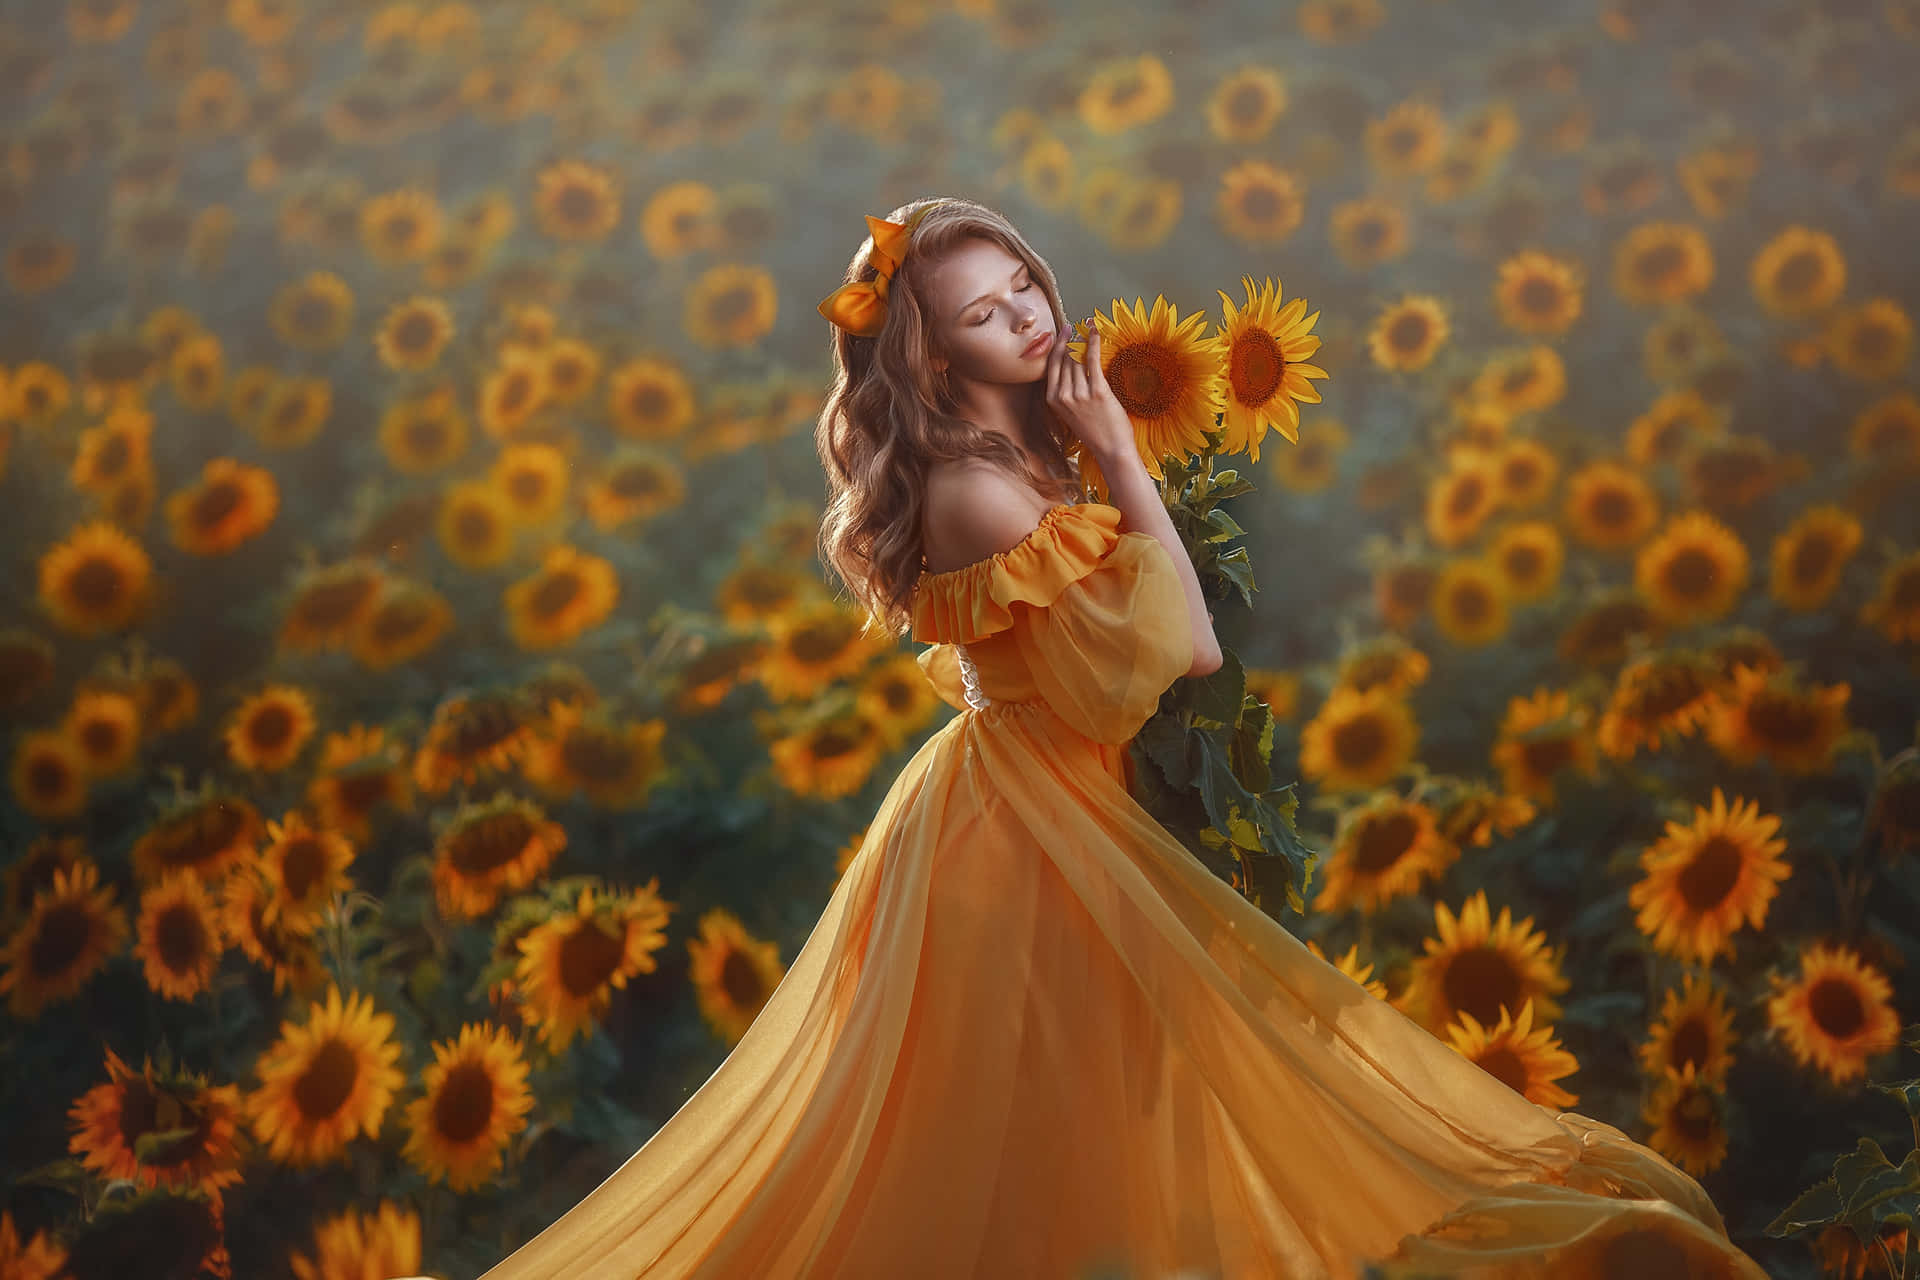 Einmädchen In Einem Gelben Kleid Steht In Einem Feld Voller Sonnenblumen.